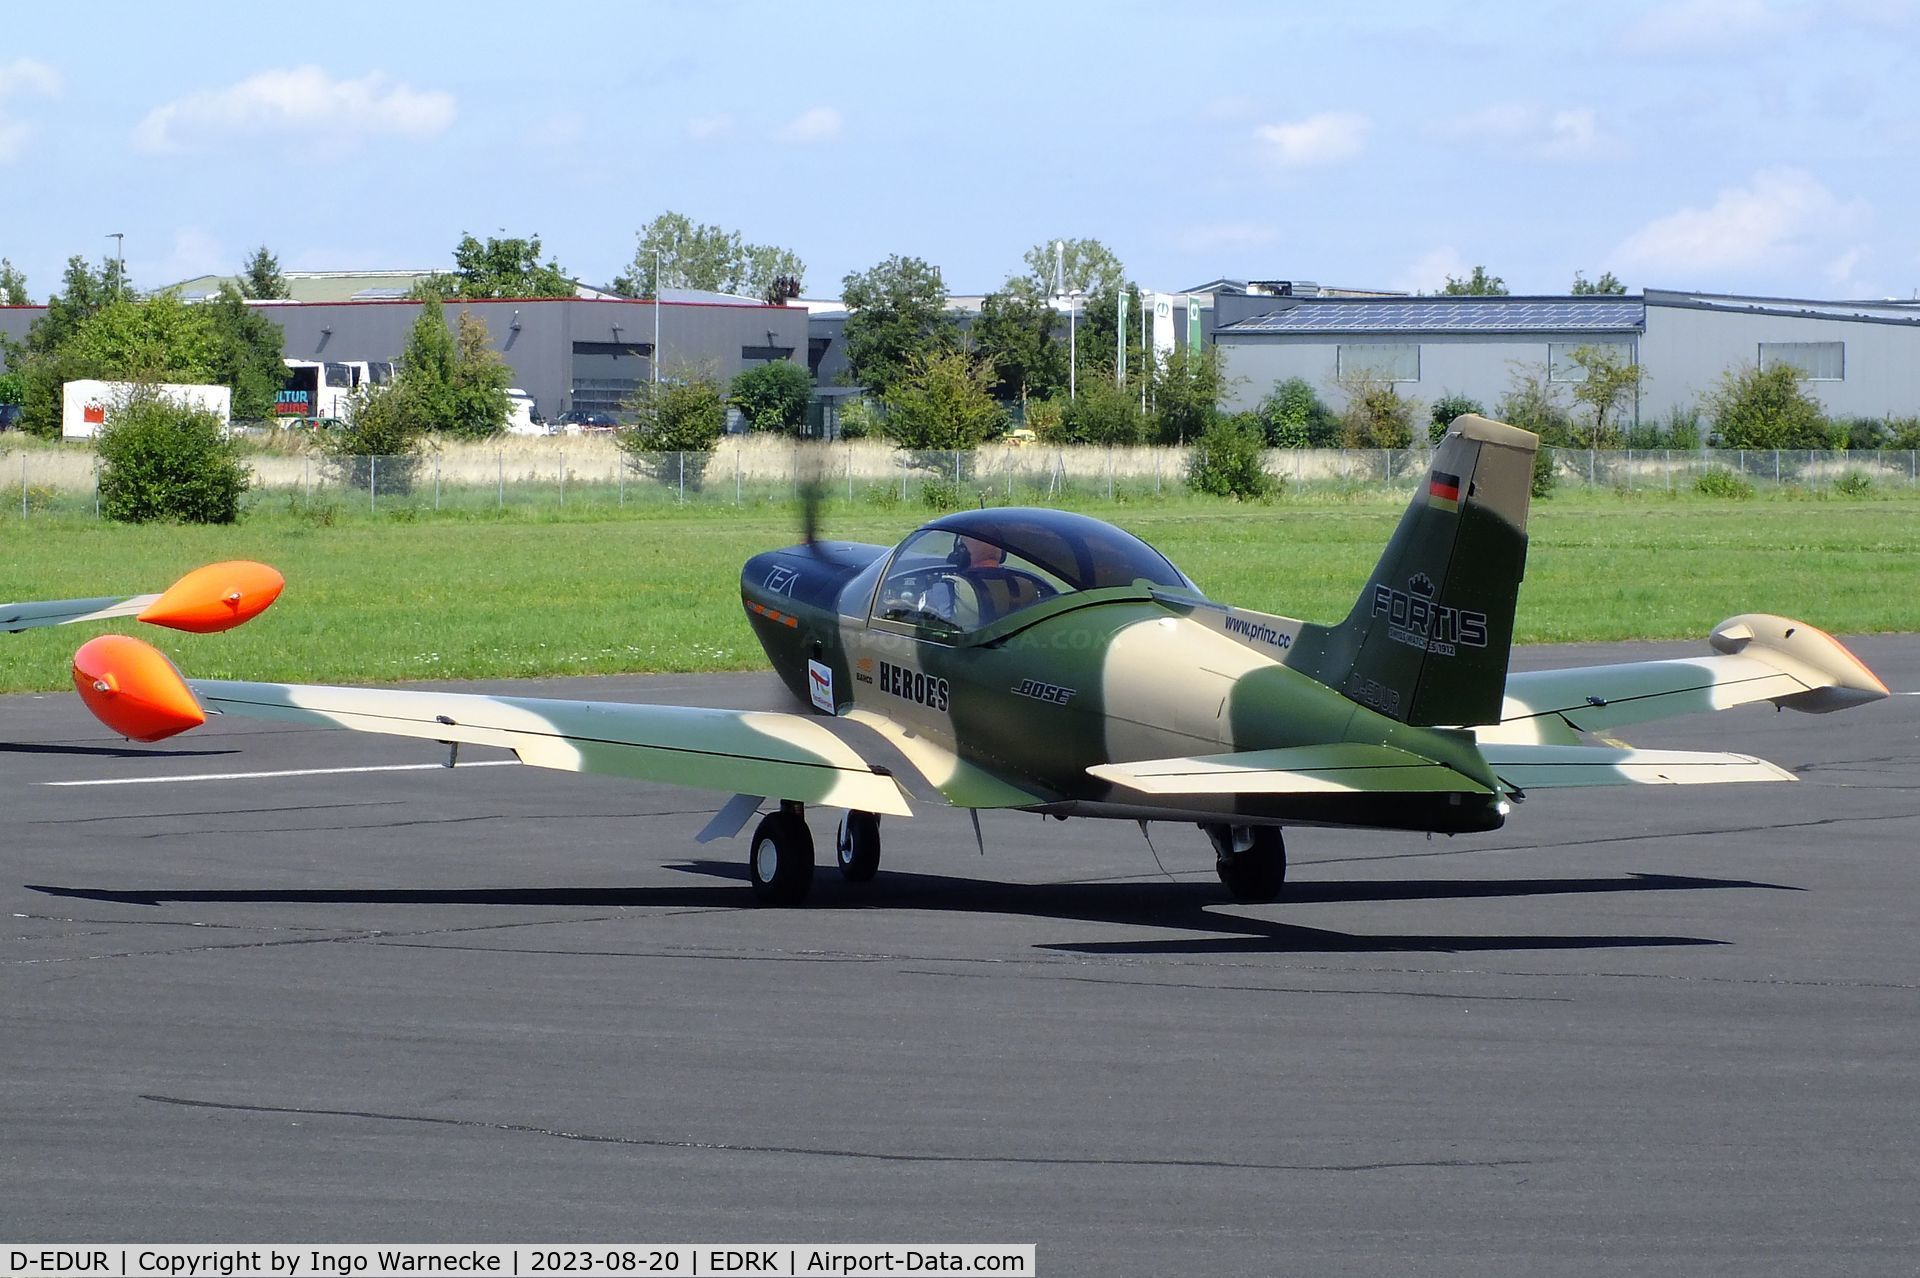 D-EDUR, 1980 SIAI-Marchetti SF-260 C/N 110, SIAI-Marchetti SF.260 of Team Niebergall at Koblenz-Winningen airfield